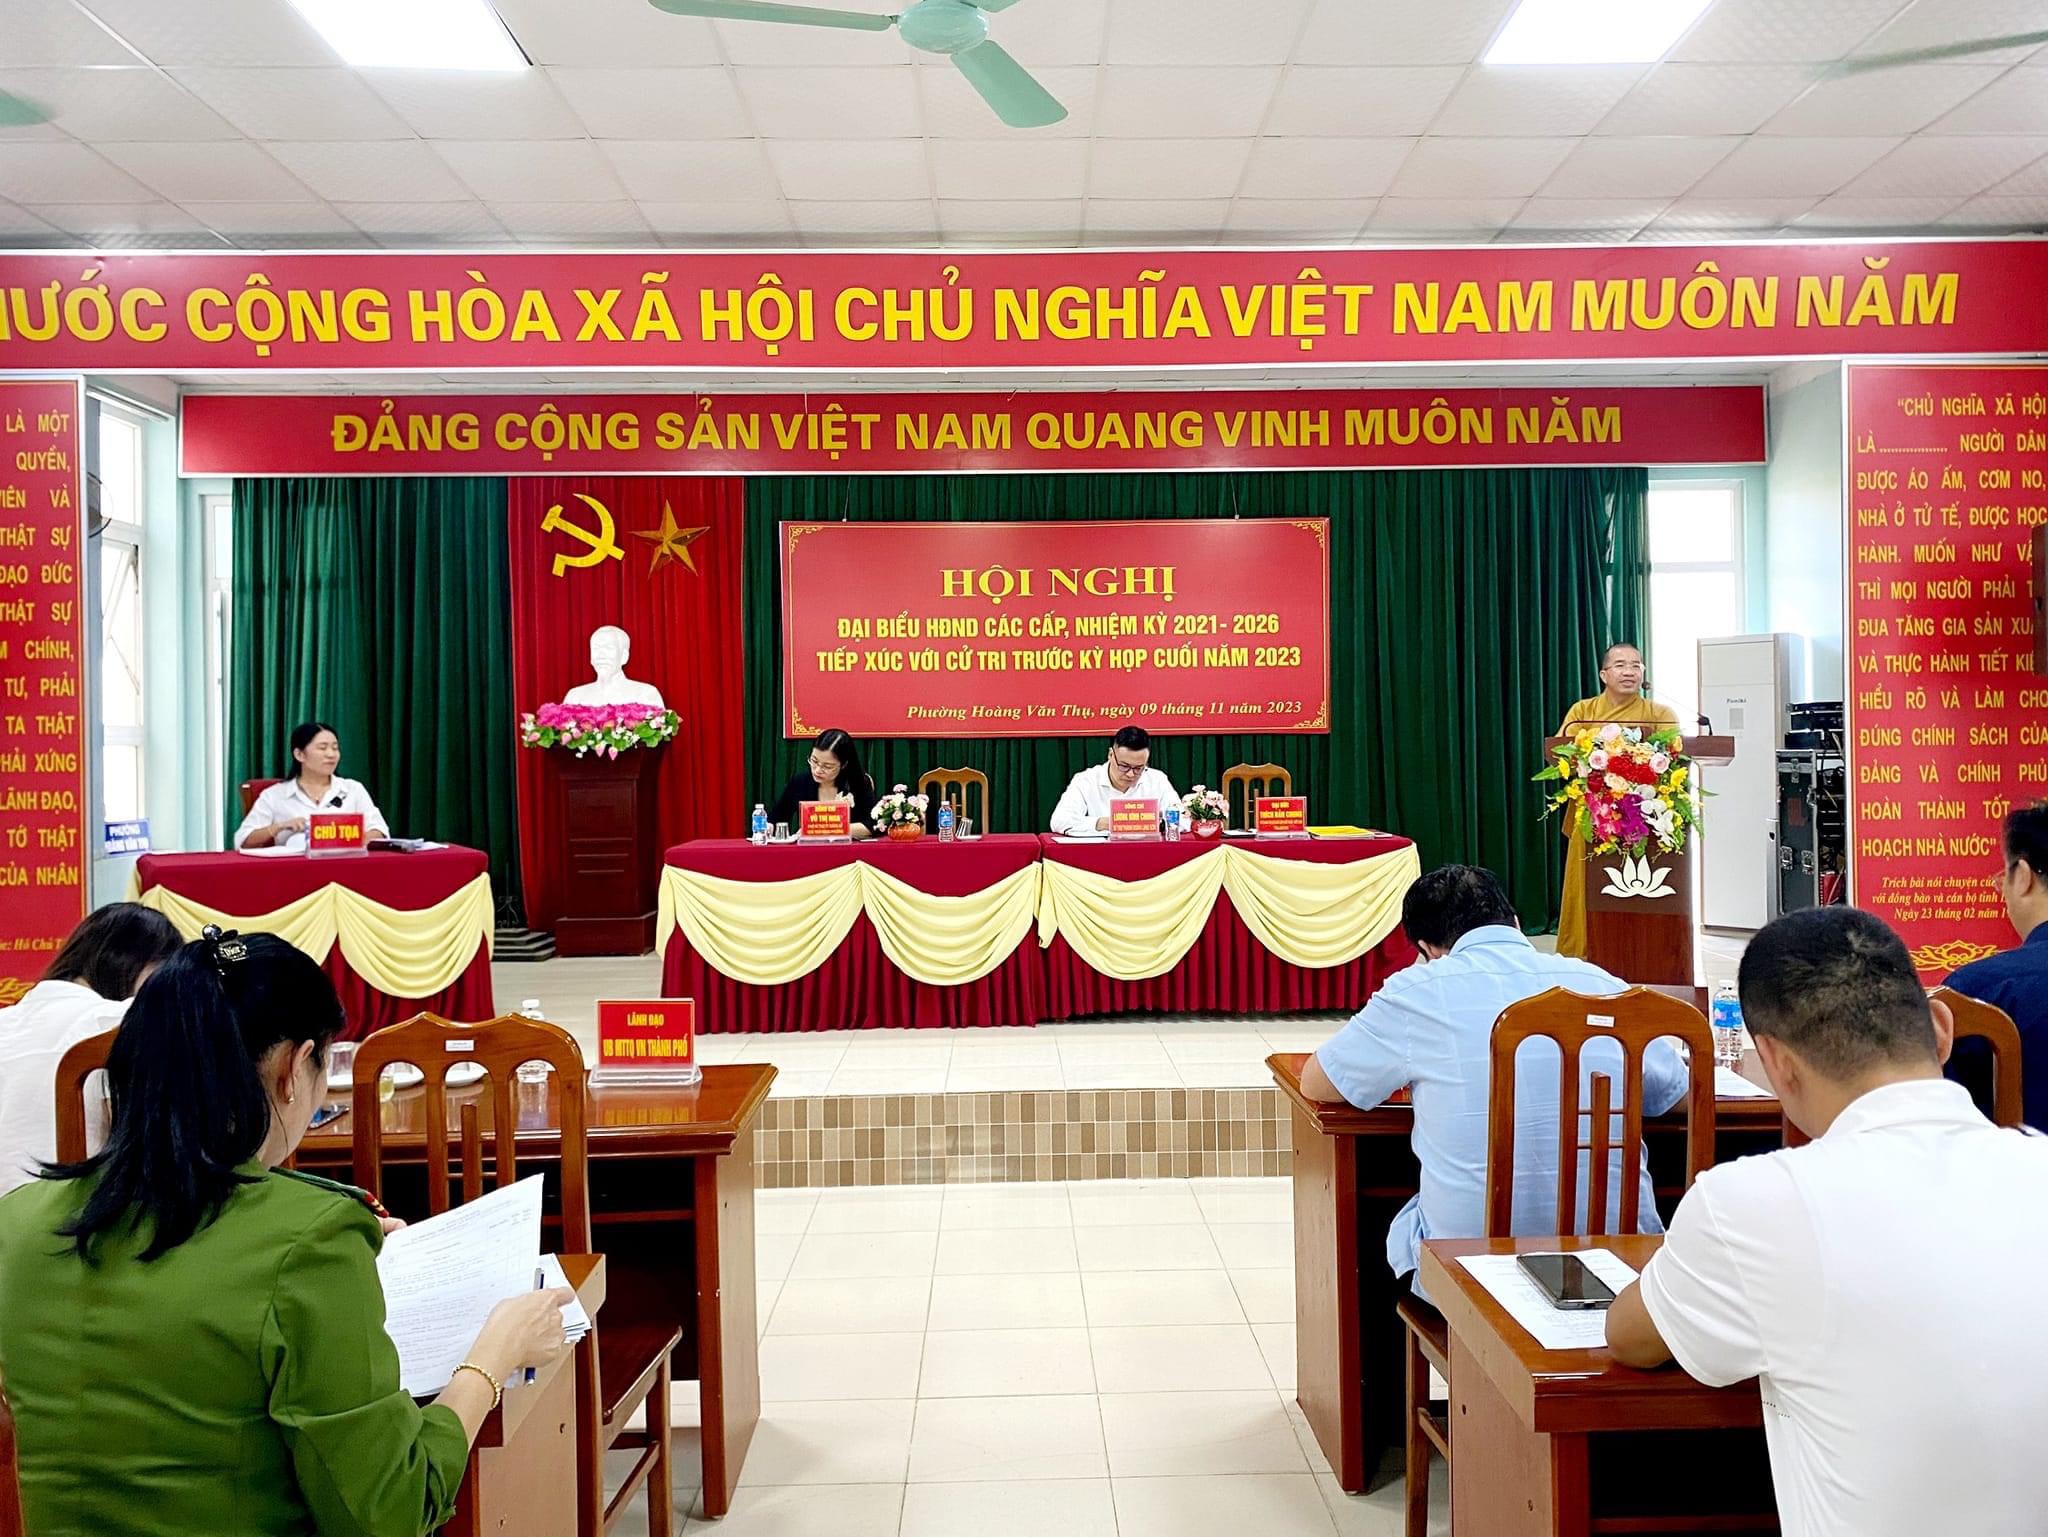  Phường Hoàng Văn Thụ: UBMTTQ phường phối hợp tổ chức Hội nghị đại biểu HĐND các cấp tiếp xúc với cử tri trước kỳ họp thường lệ cuối năm 2023.